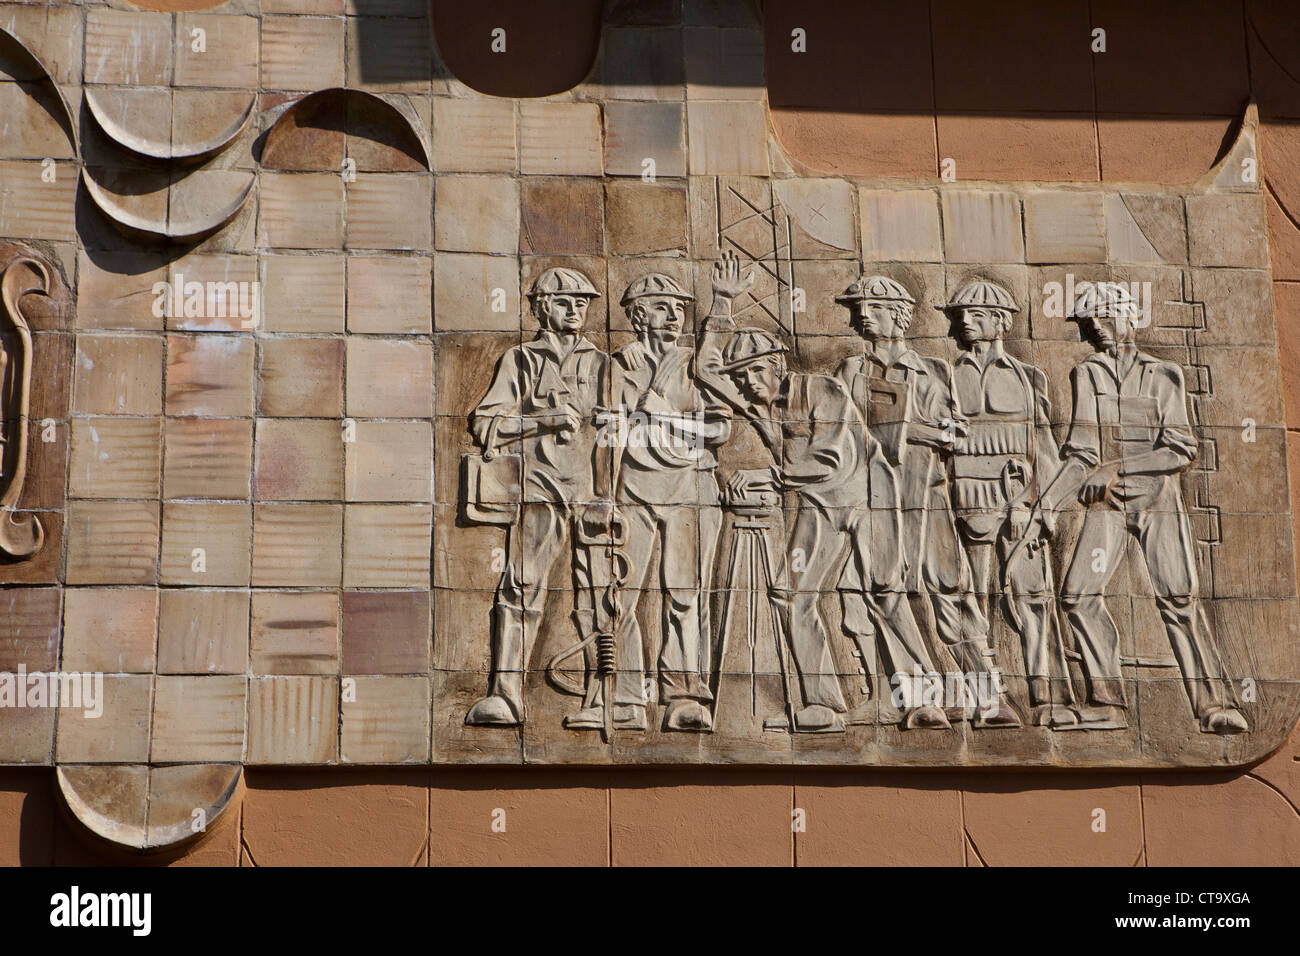 Des statues de travailleurs soviétiques, Sighişoara, Transylvanie Carpatique, la Târnava Mare dans la rivière Mureş, Roumanie, Europe de l'Est, de l'UNION EUROPÉENNE Banque D'Images